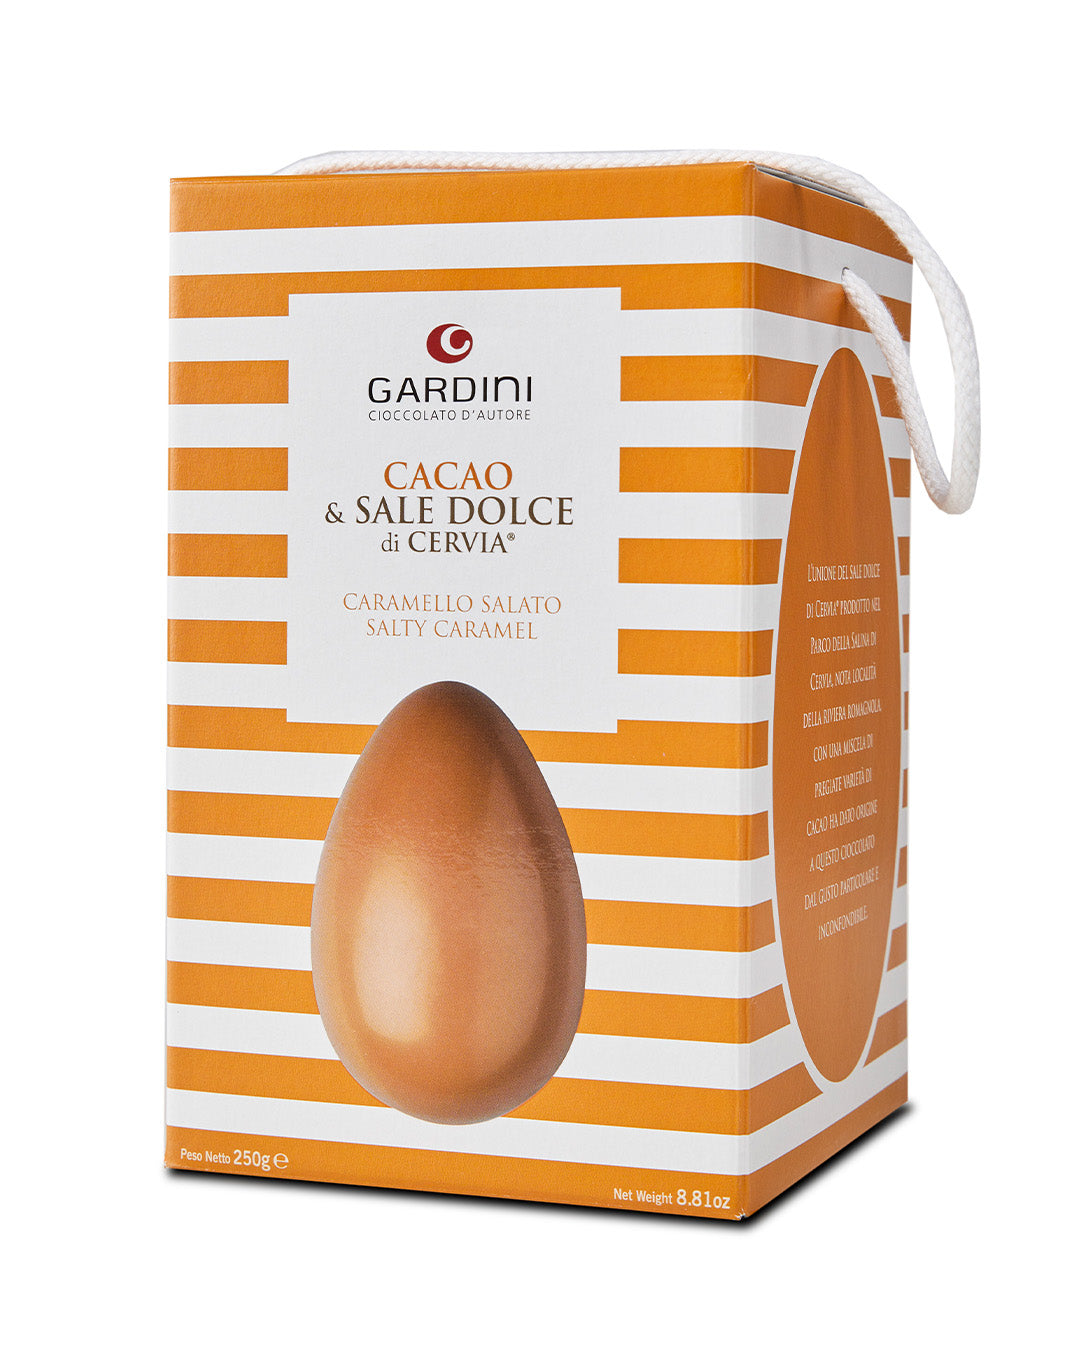 Uovo "Cacao e Sale" al caramello con sale dolce di Cervia Gardini